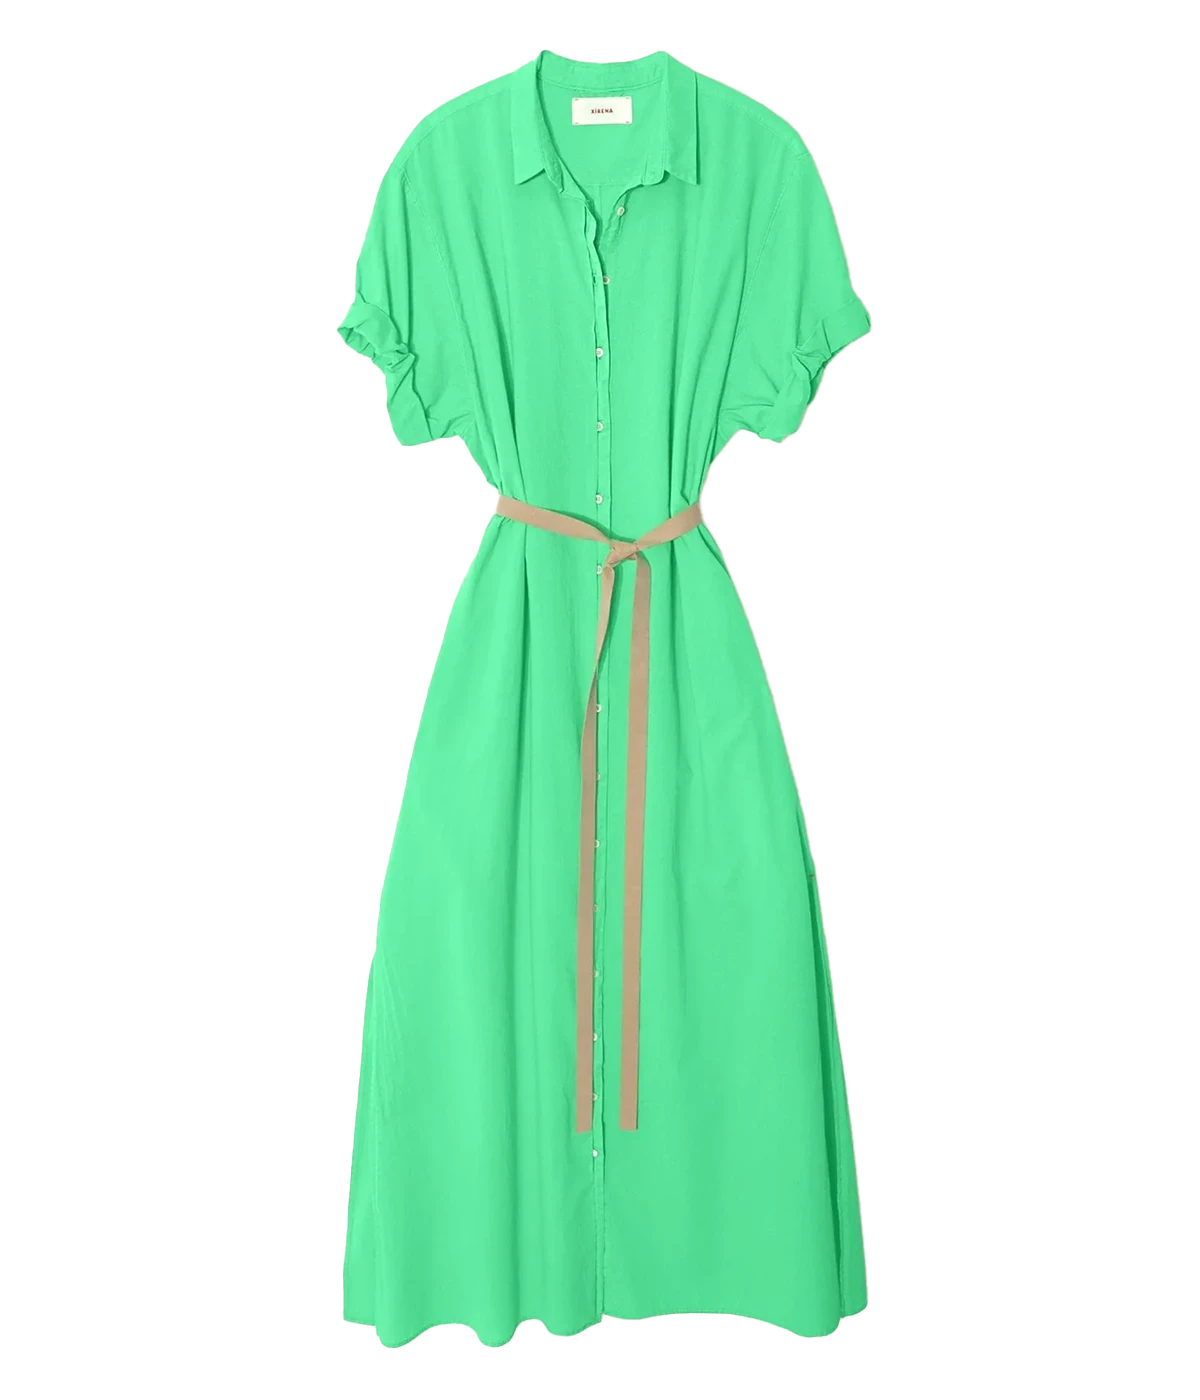 Linnet Dress in Green Glow